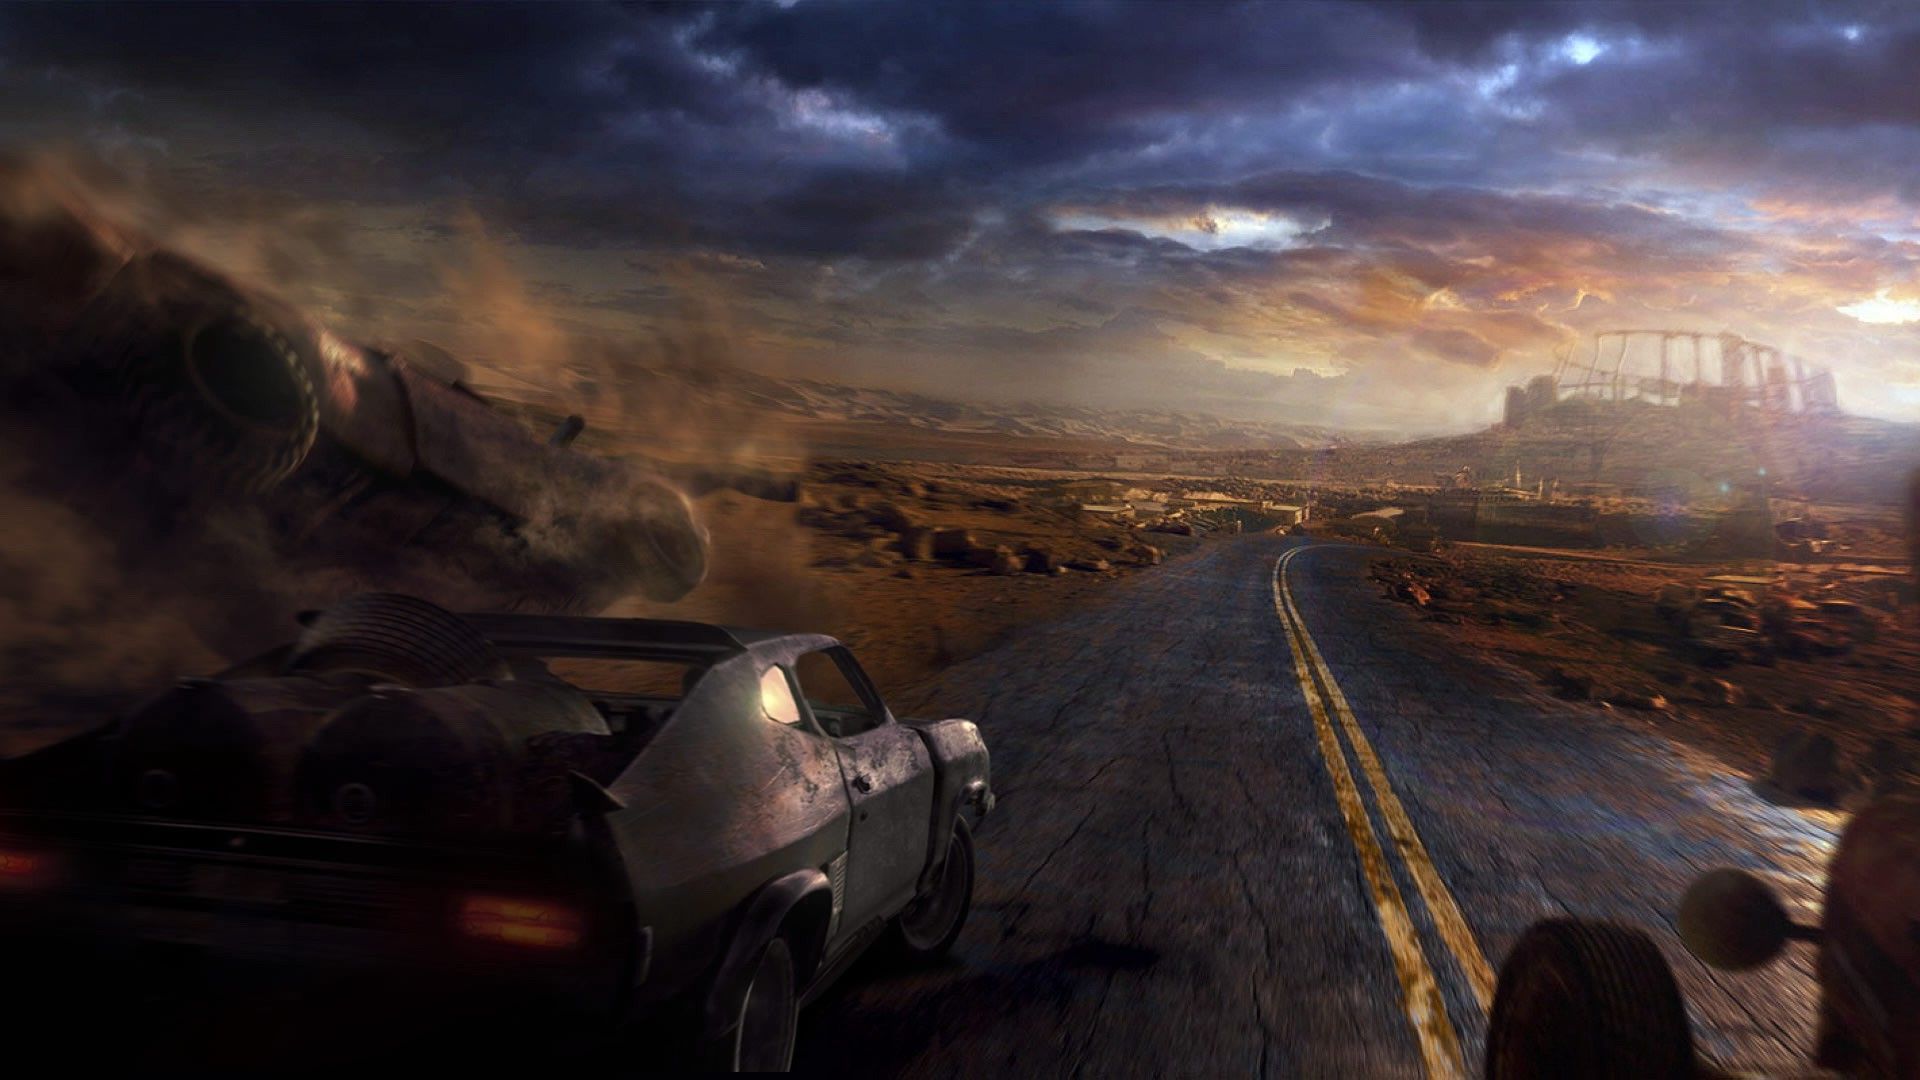 Mad Max Wallpaper 1080p - WallpaperSafari